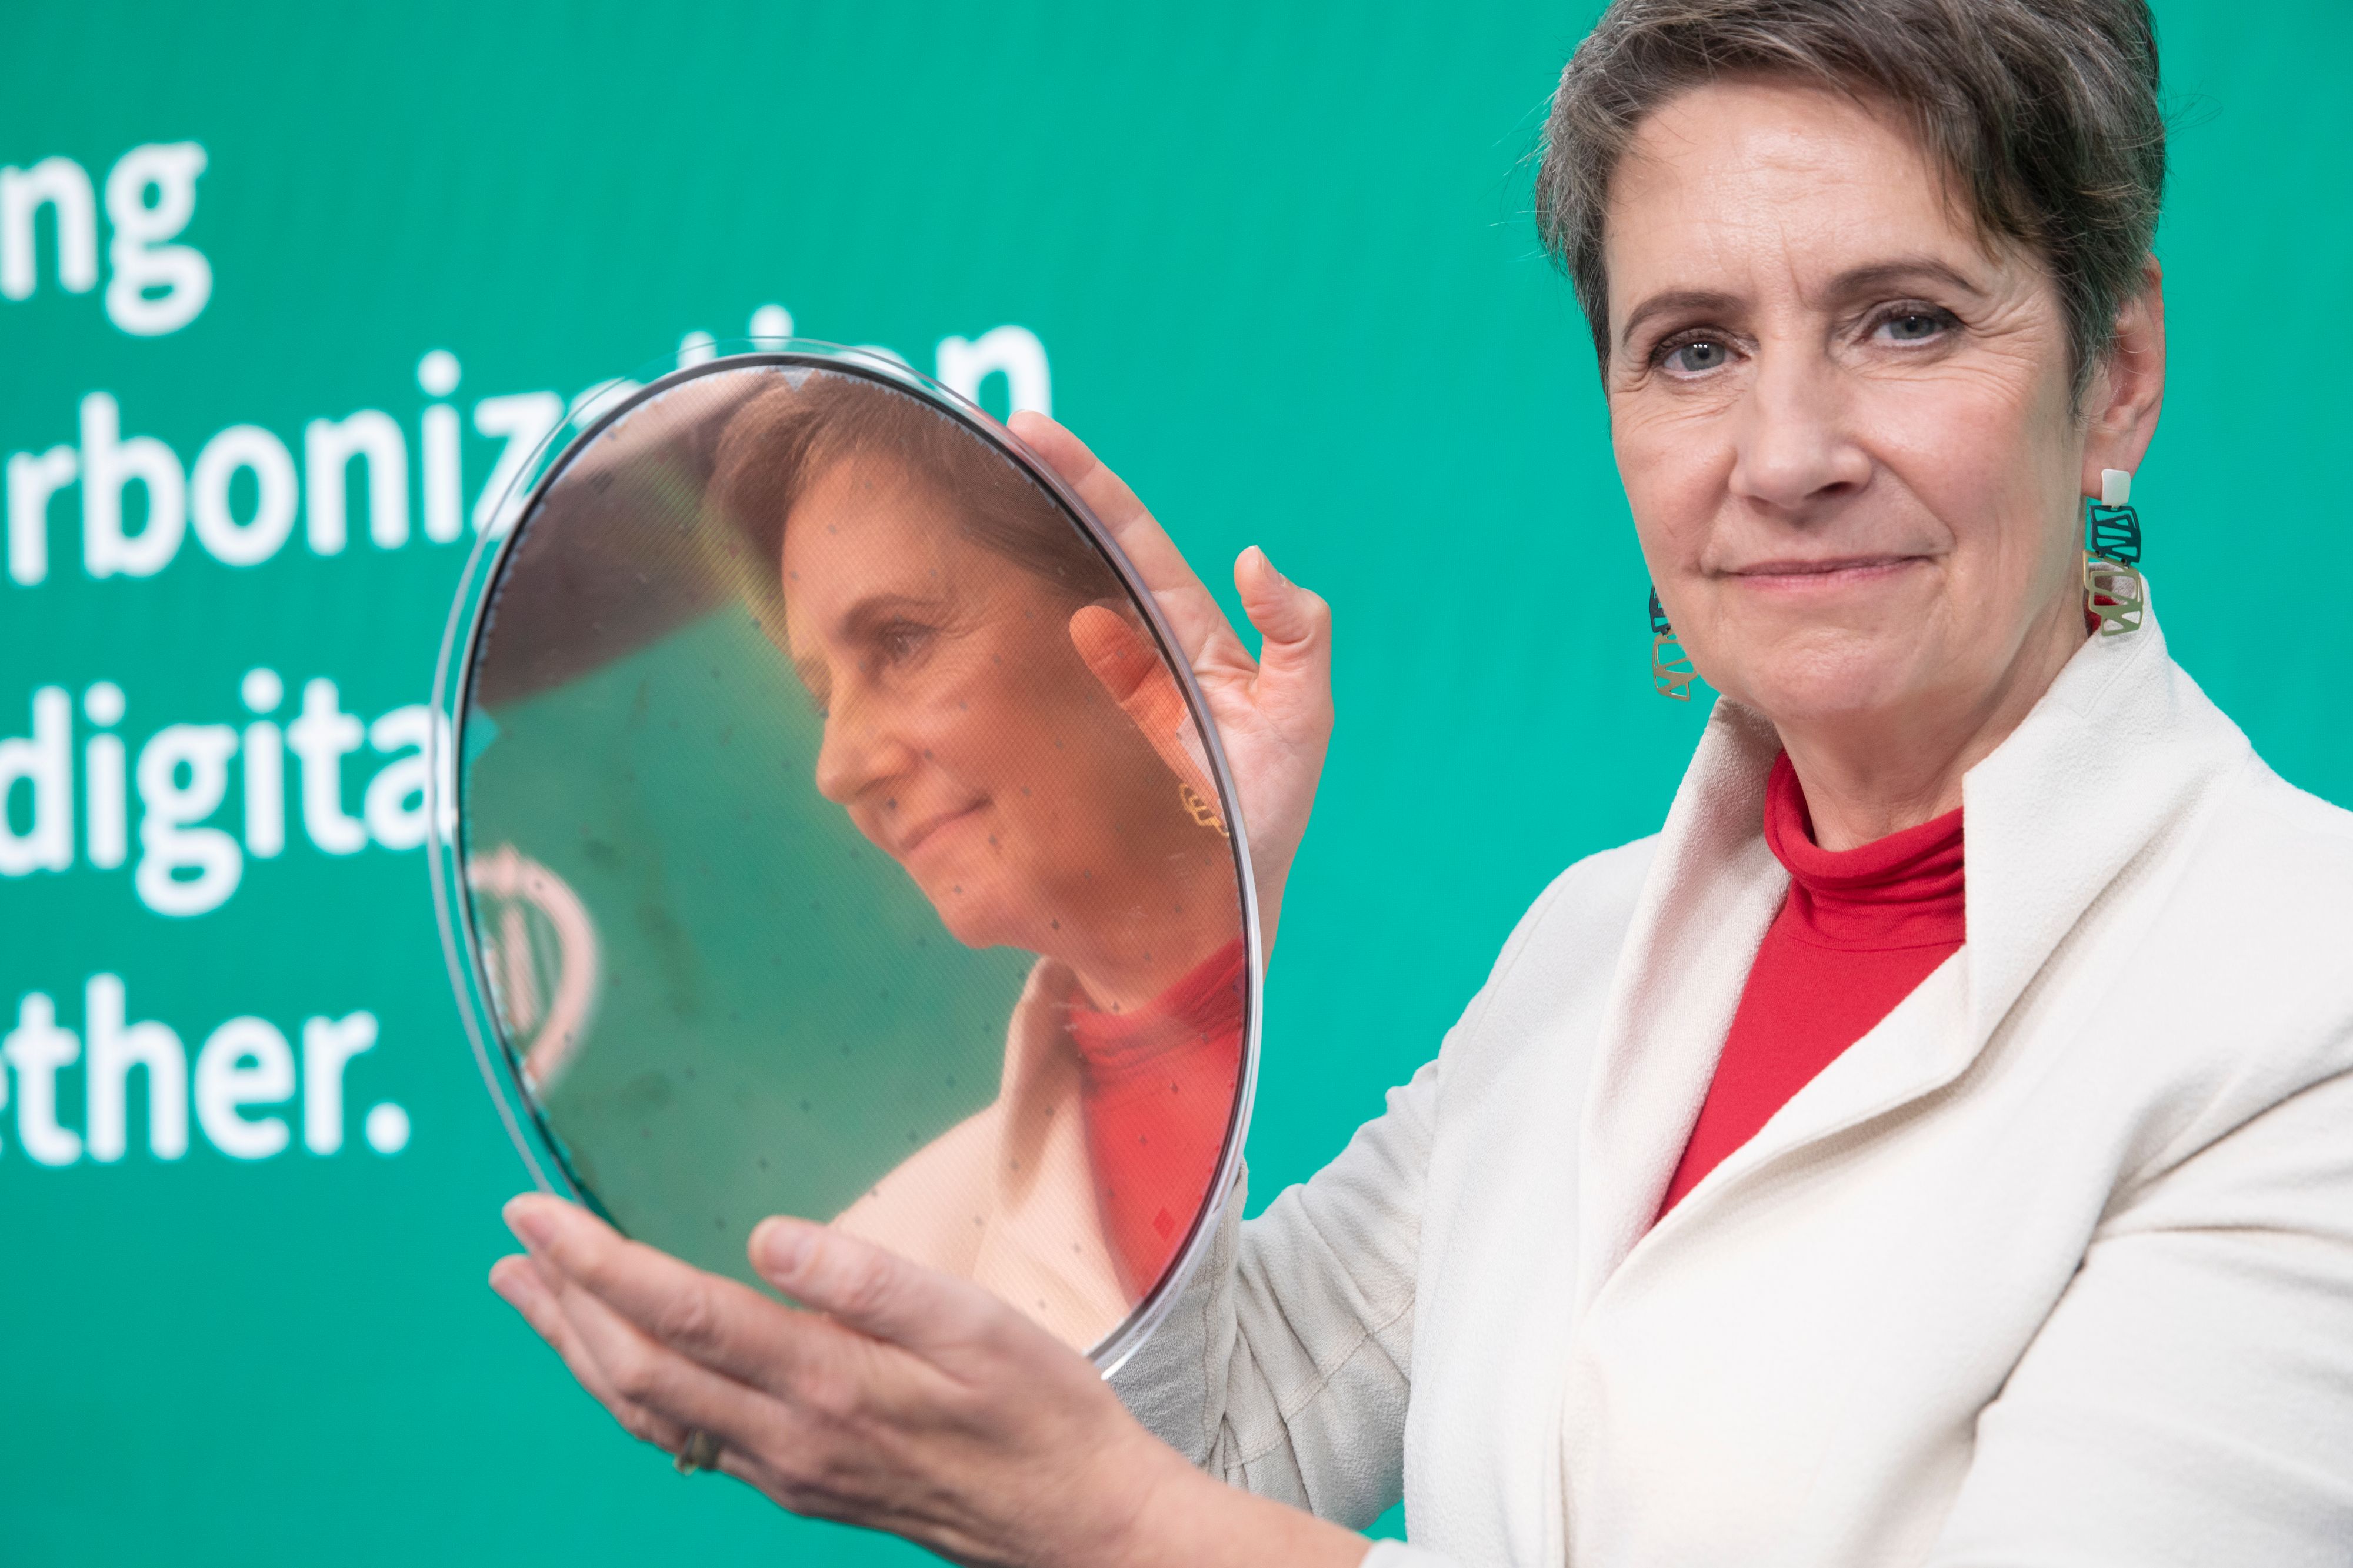 Neuer Expertise-Rat will Österreich "Mehr Grips" schenken